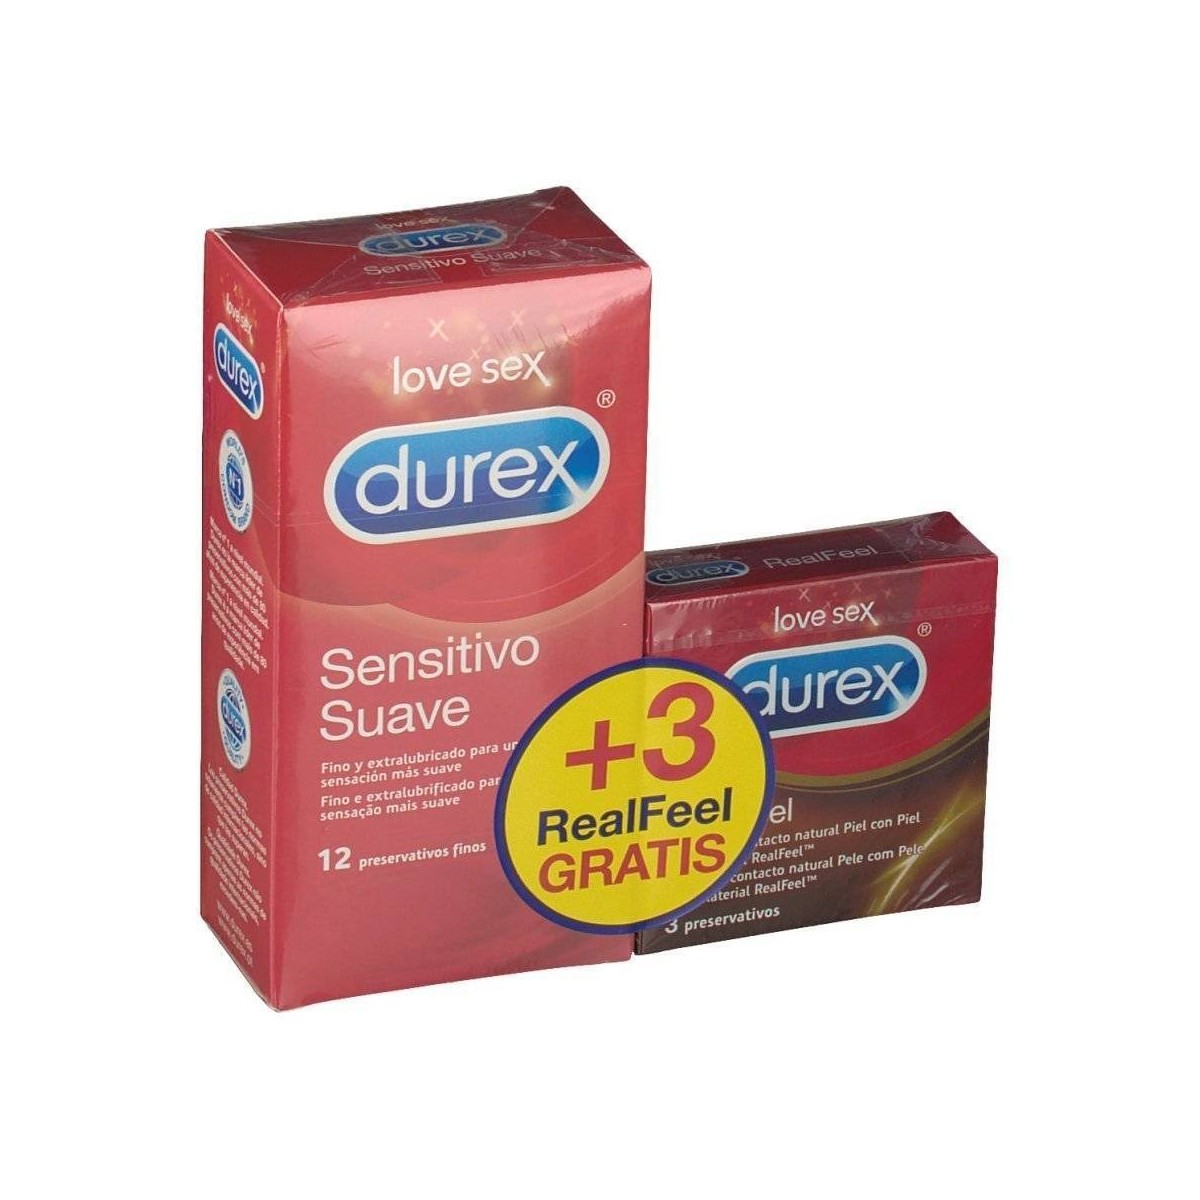 durex-sensitivo-suave-12-preservativos-finos